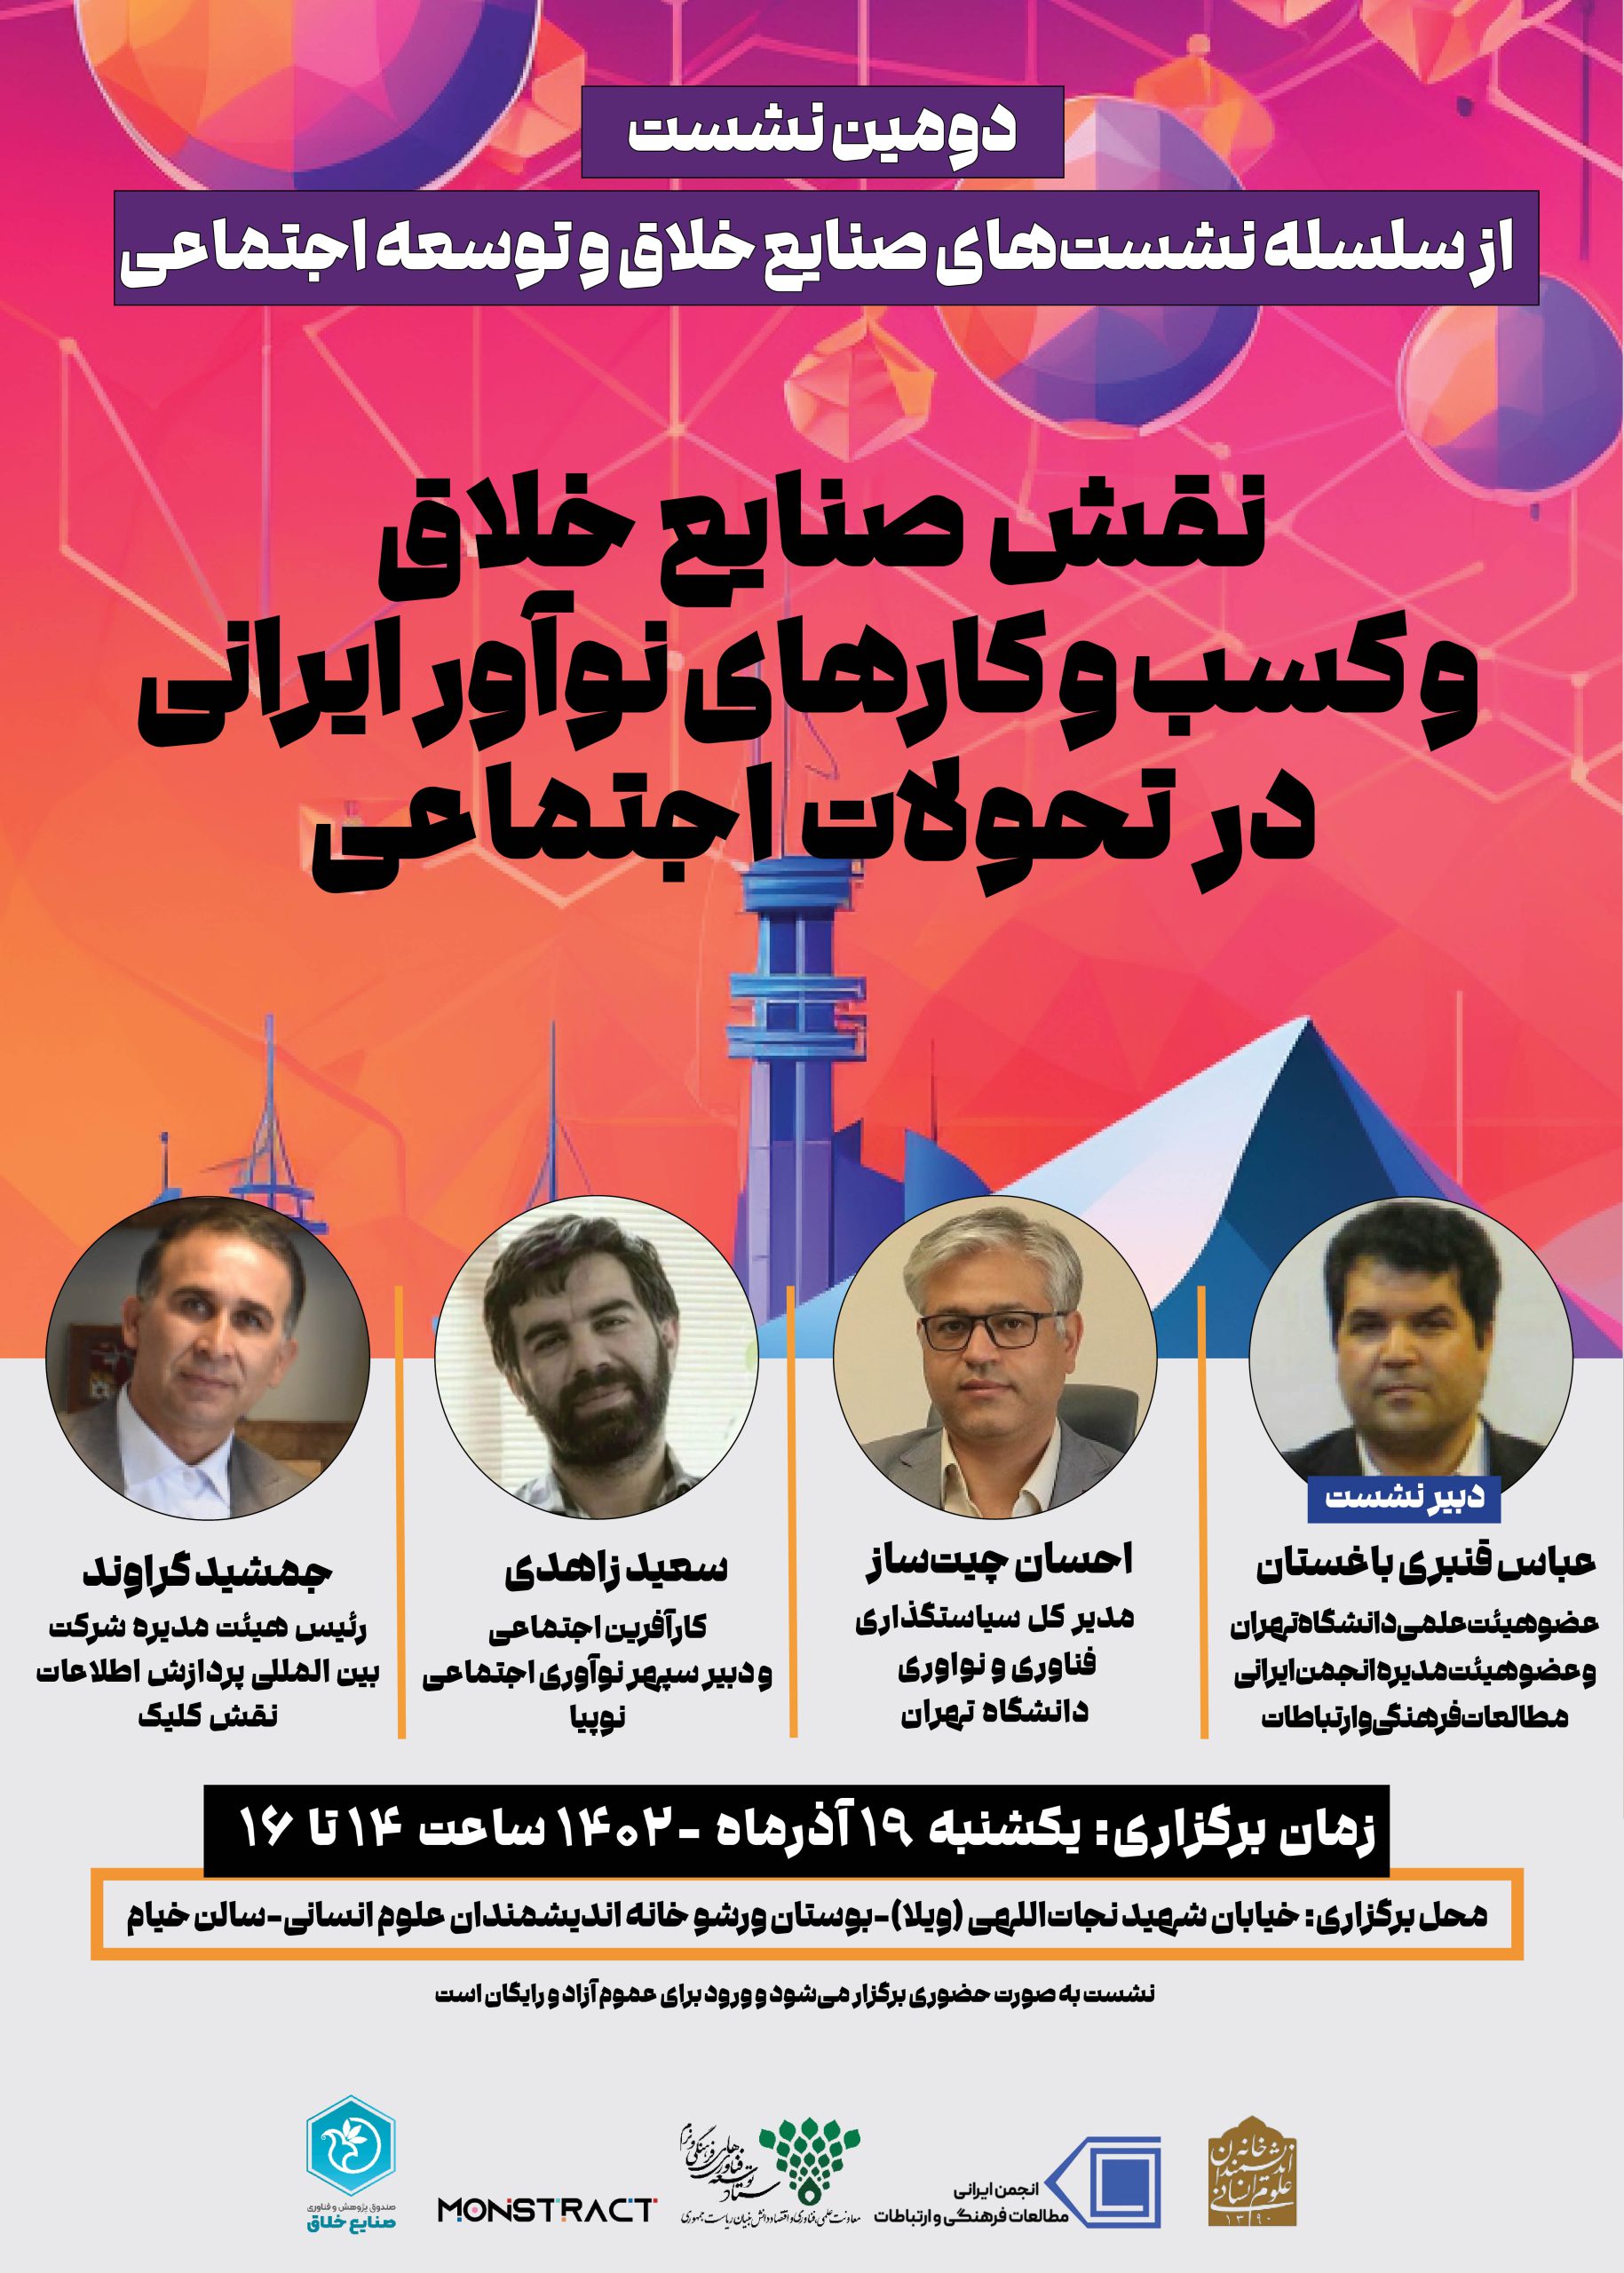 نقش صنایع خلاق و کسب وکارهای نوآور ایرانی در تحولات اجتماعی